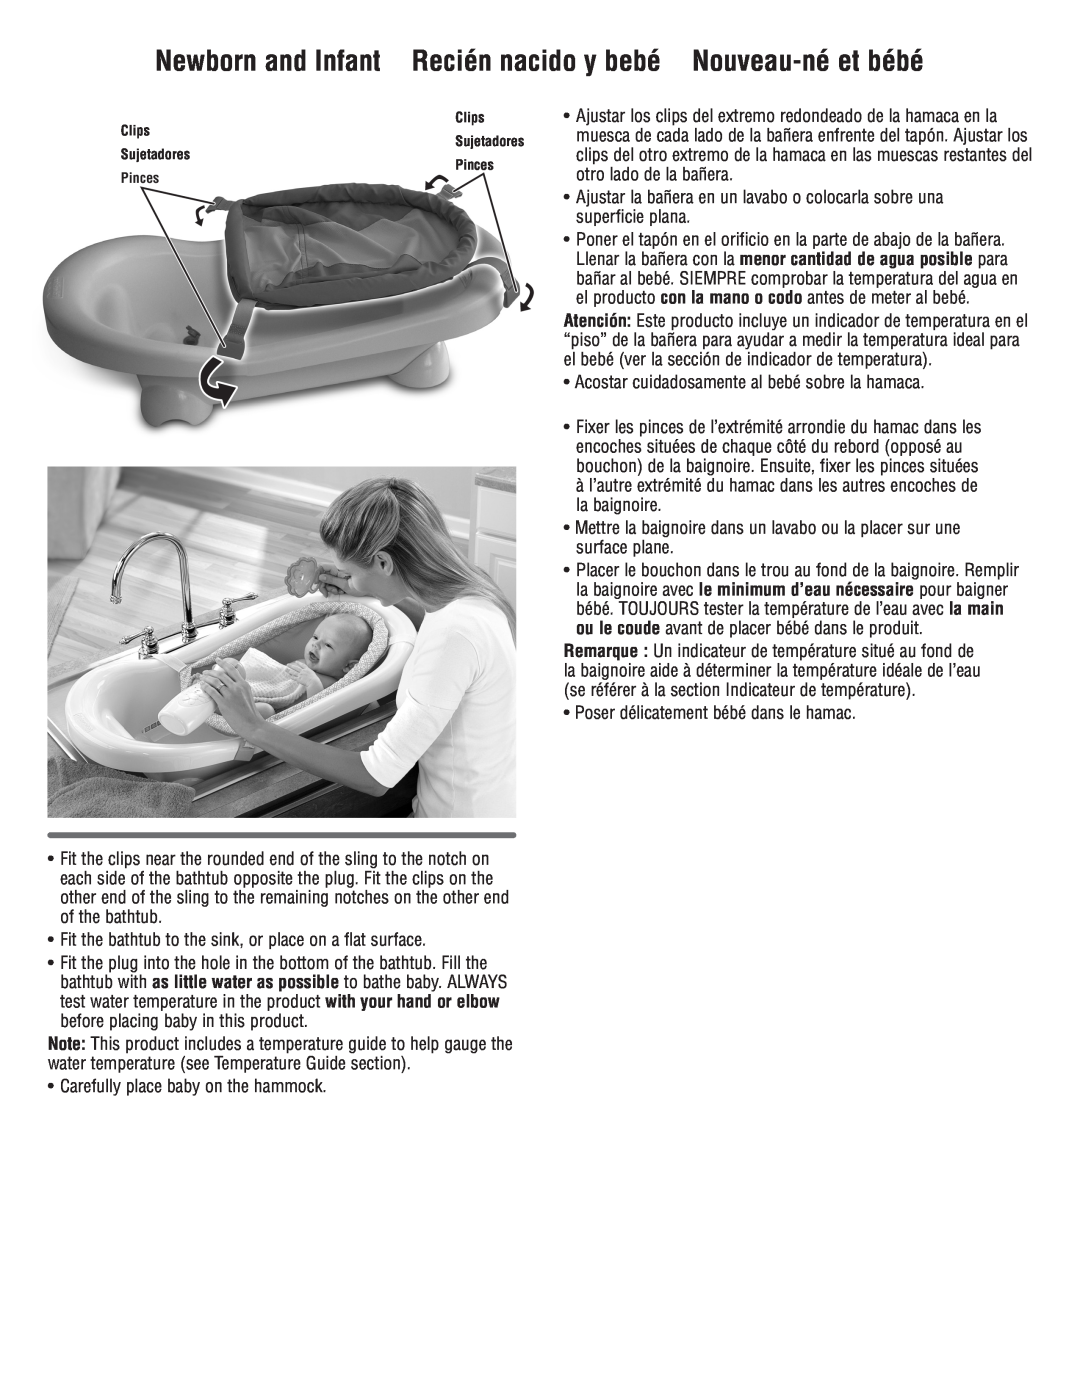 Fisher-Price P9042 manual Newborn and Infant Recién nacido y bebé Nouveau-né et bébé 